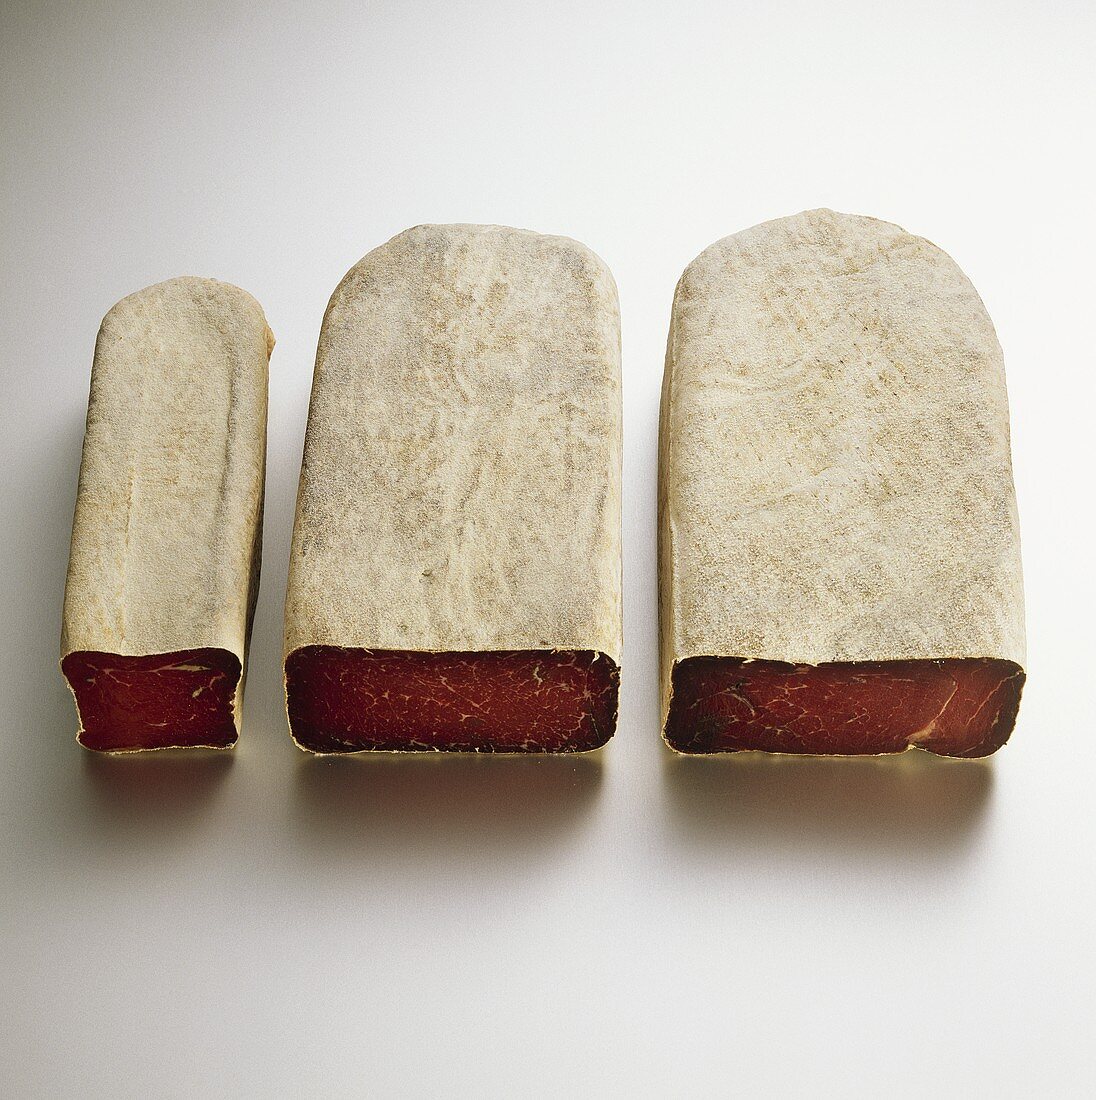 Three pieces of dry-cured beef (Bündnerfleisch)